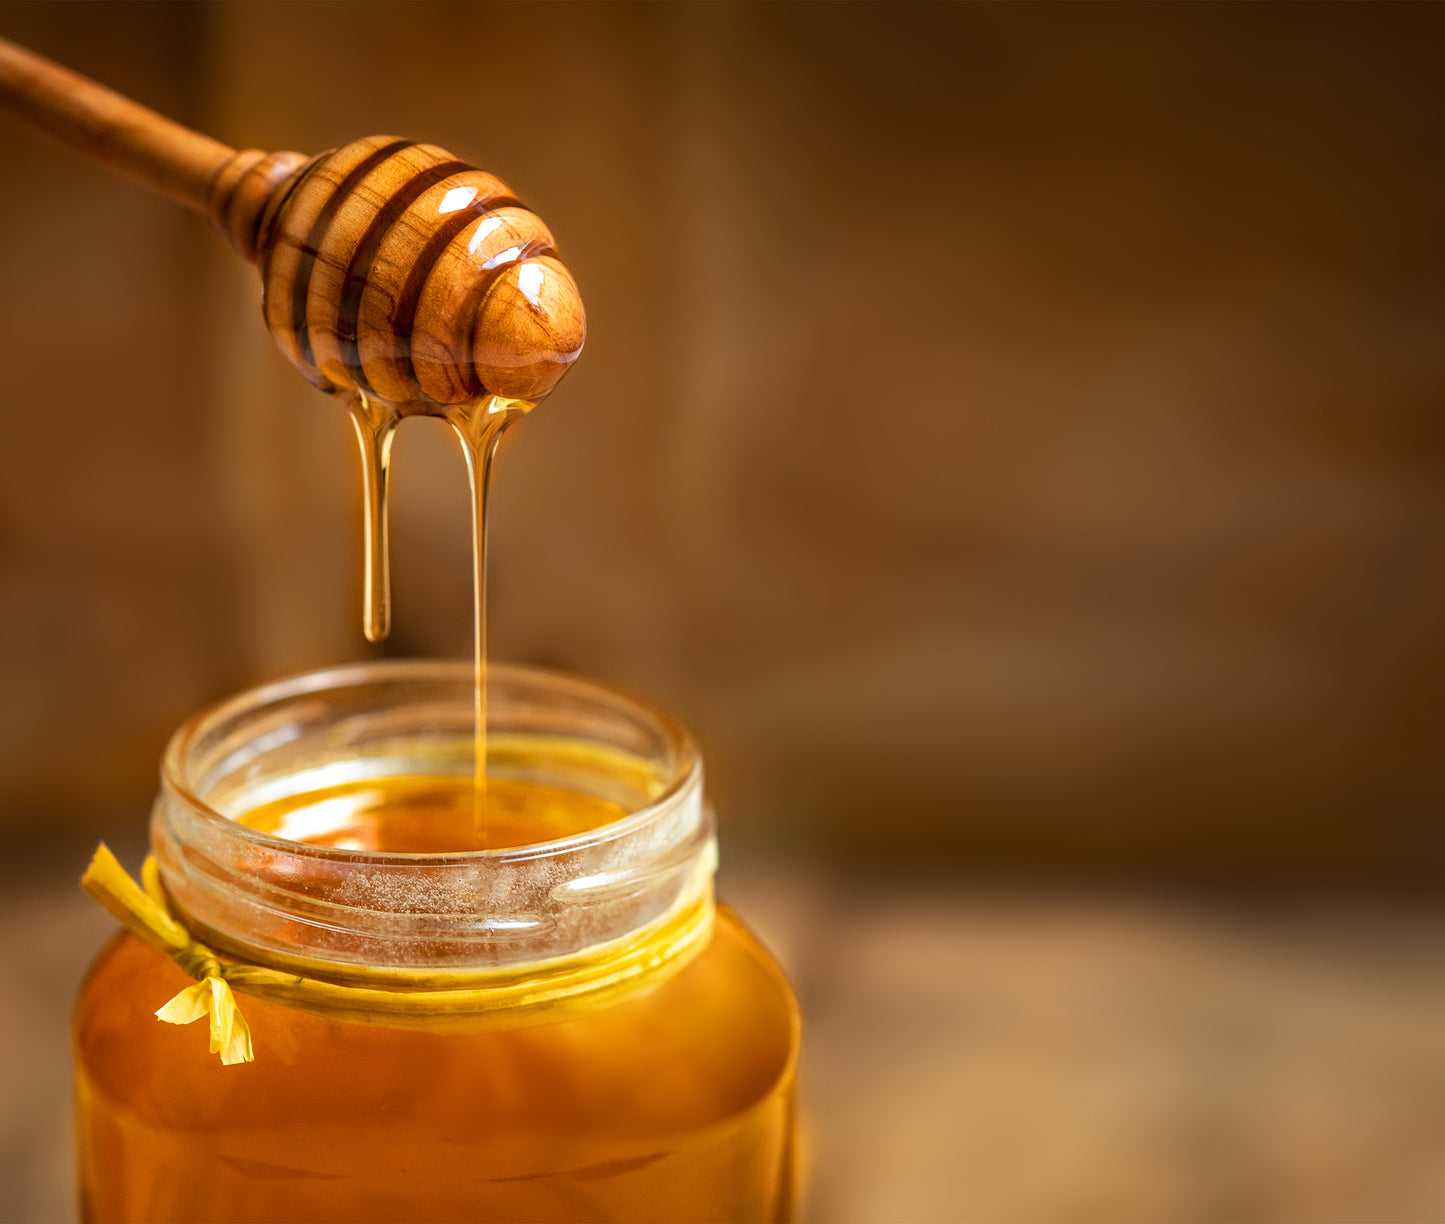 Le miel, un aliment au bénéfice de la santé